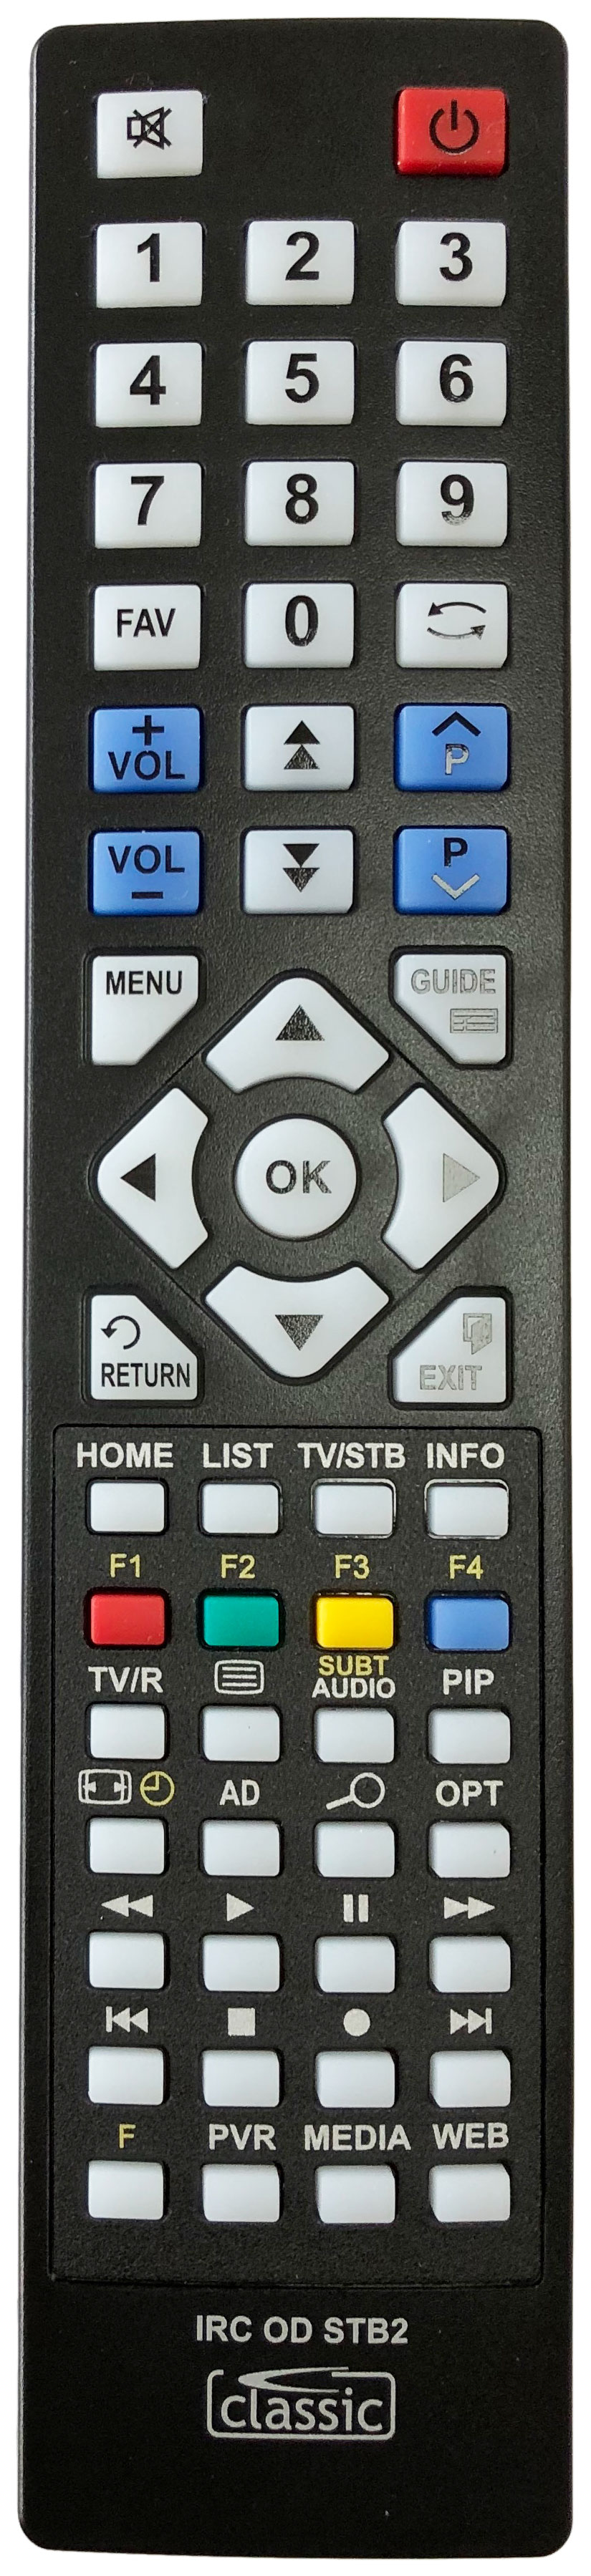 HITACHI HDR5T01 Remote Control Alternative